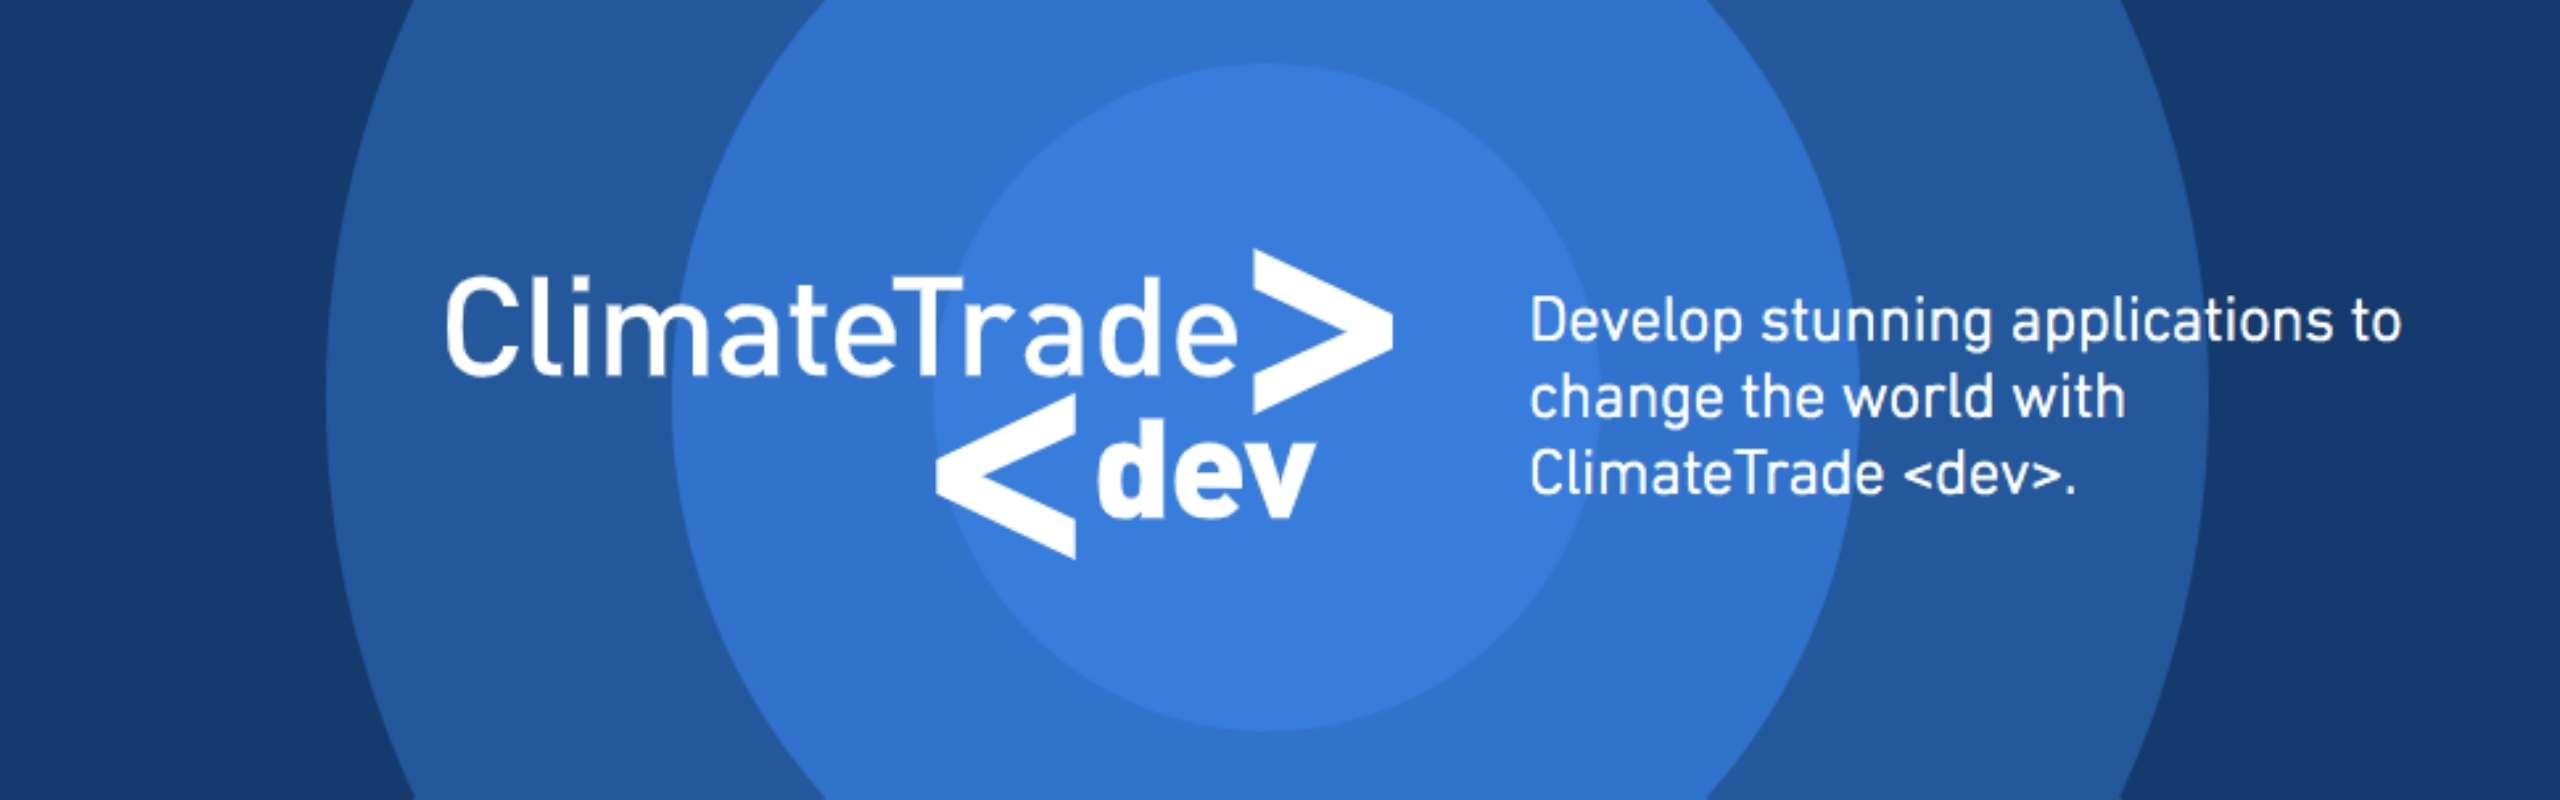 ClimateTrade Developers' Portal